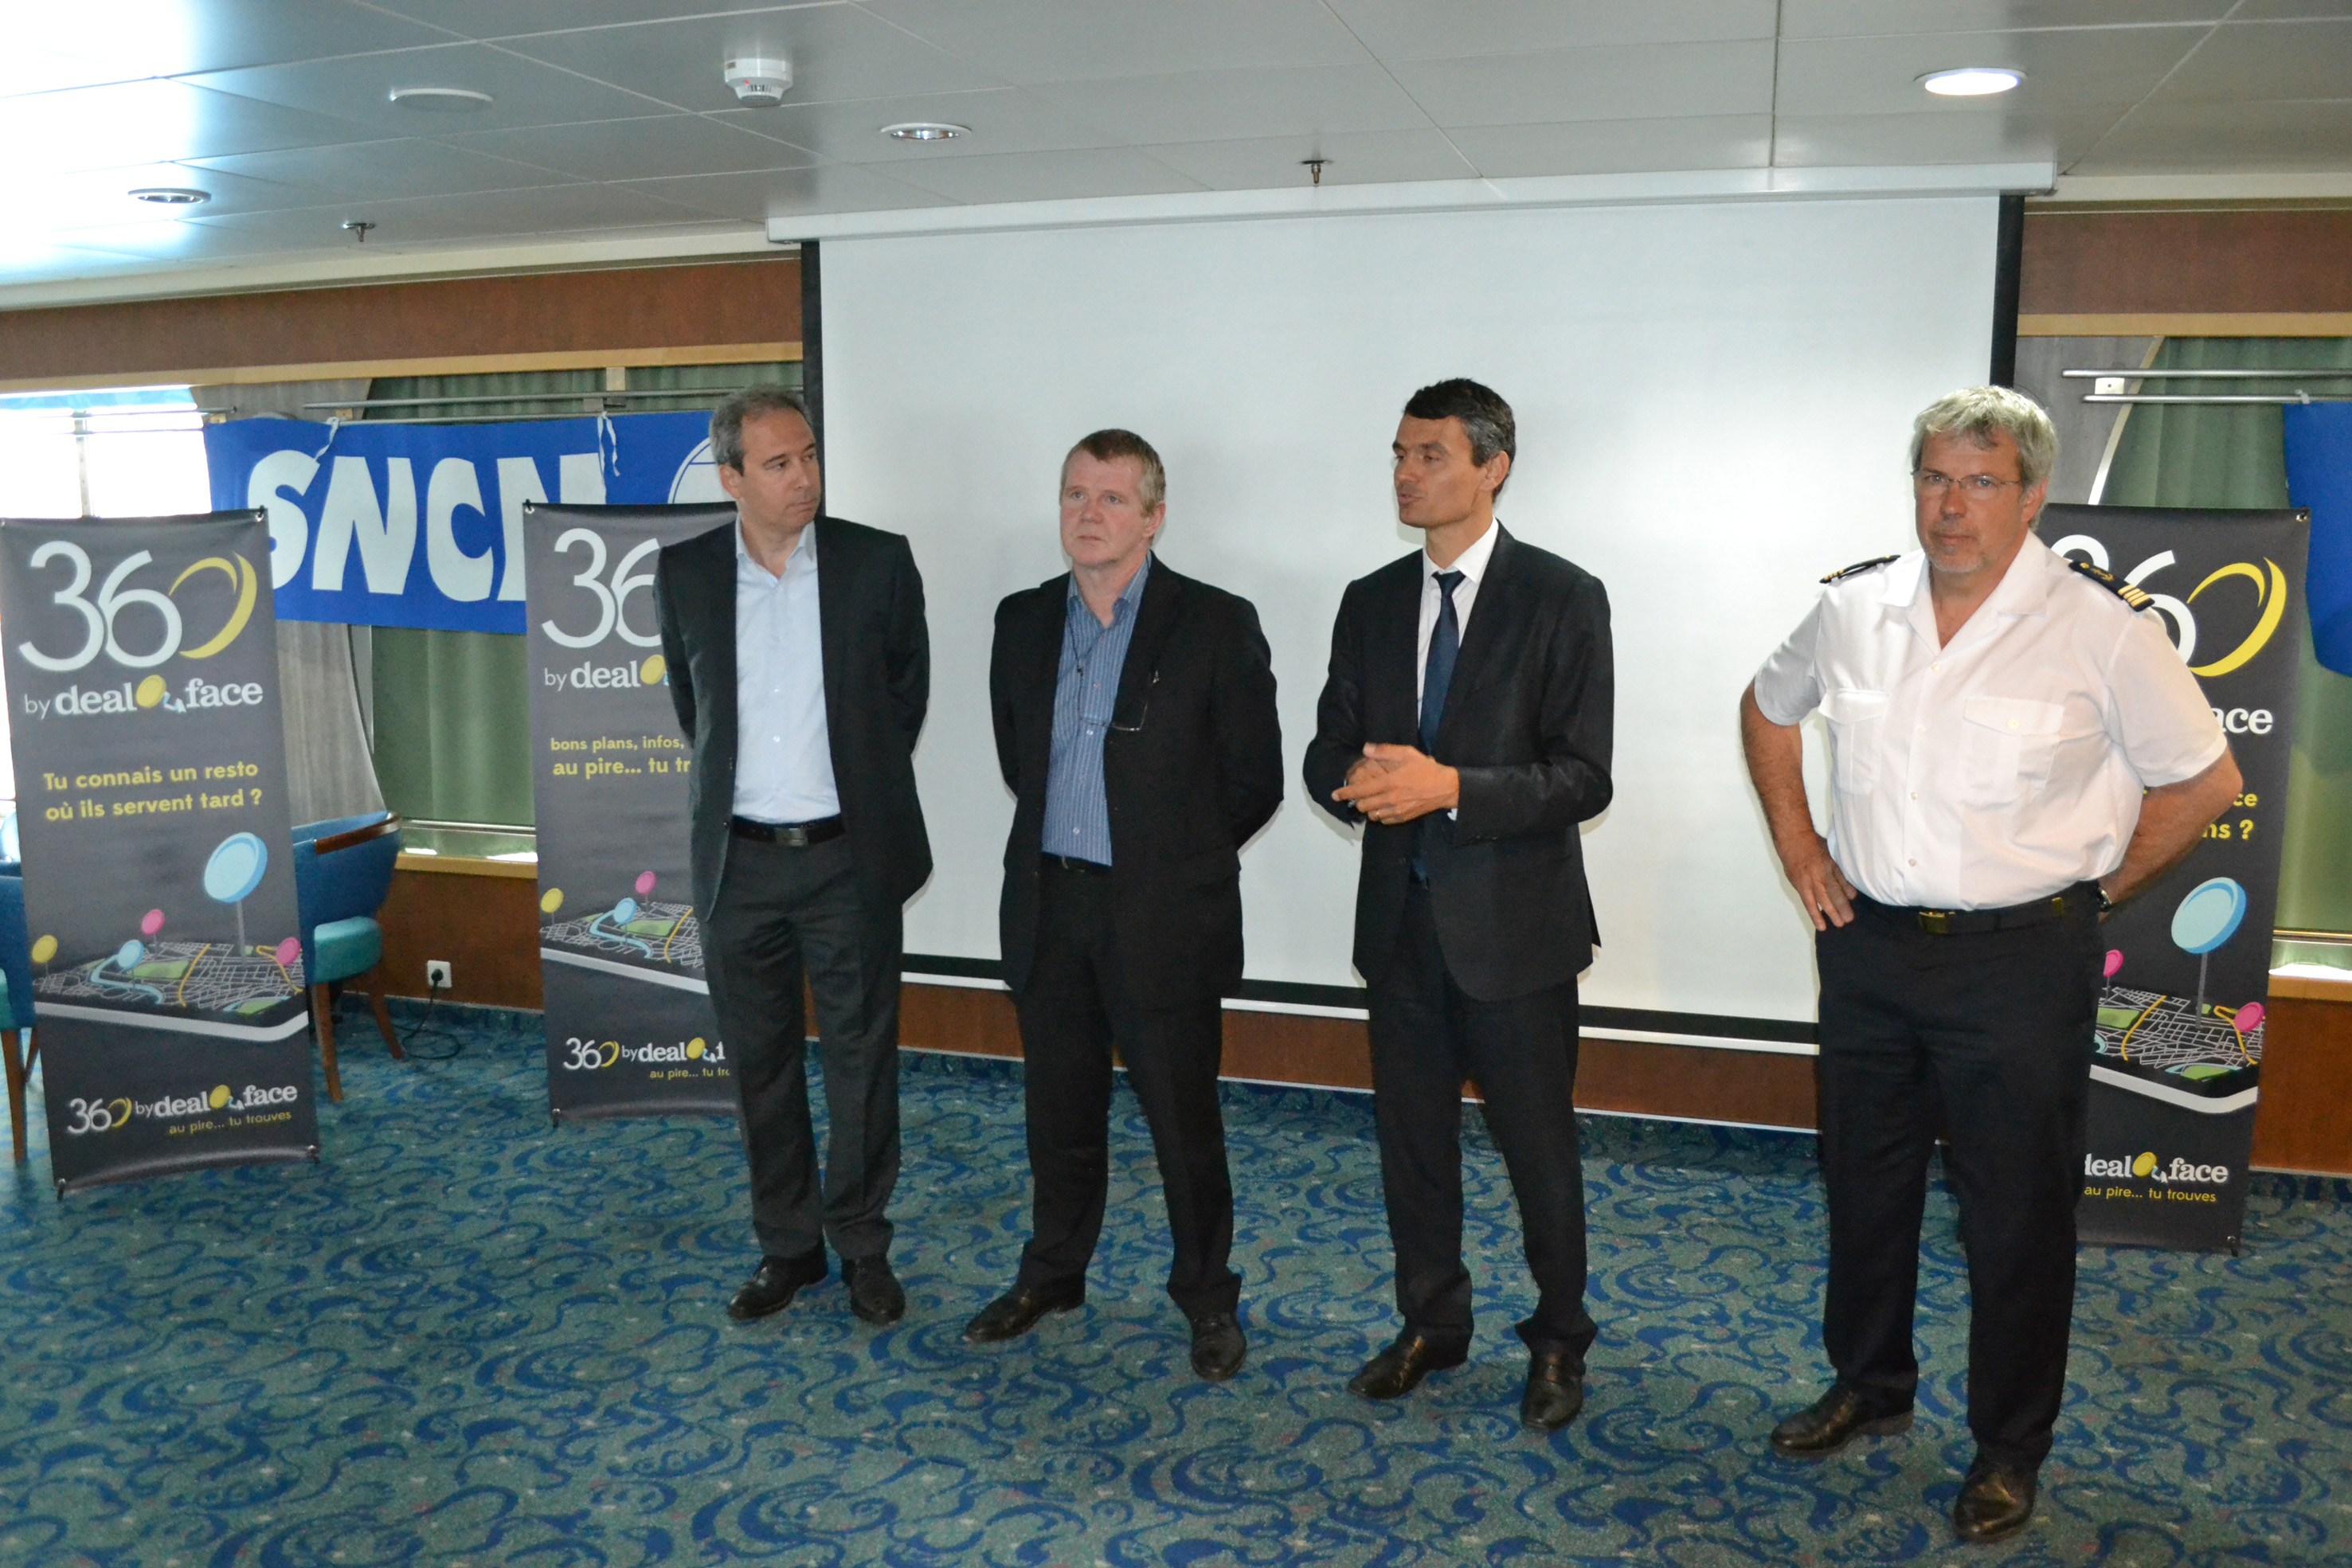 Le Président de l'ADEC, le Directeur de LSB ADVERTISING, le Directeur de la SNCM et le Commandant de bord du navire Pascal Paoli, en marge de la présentation